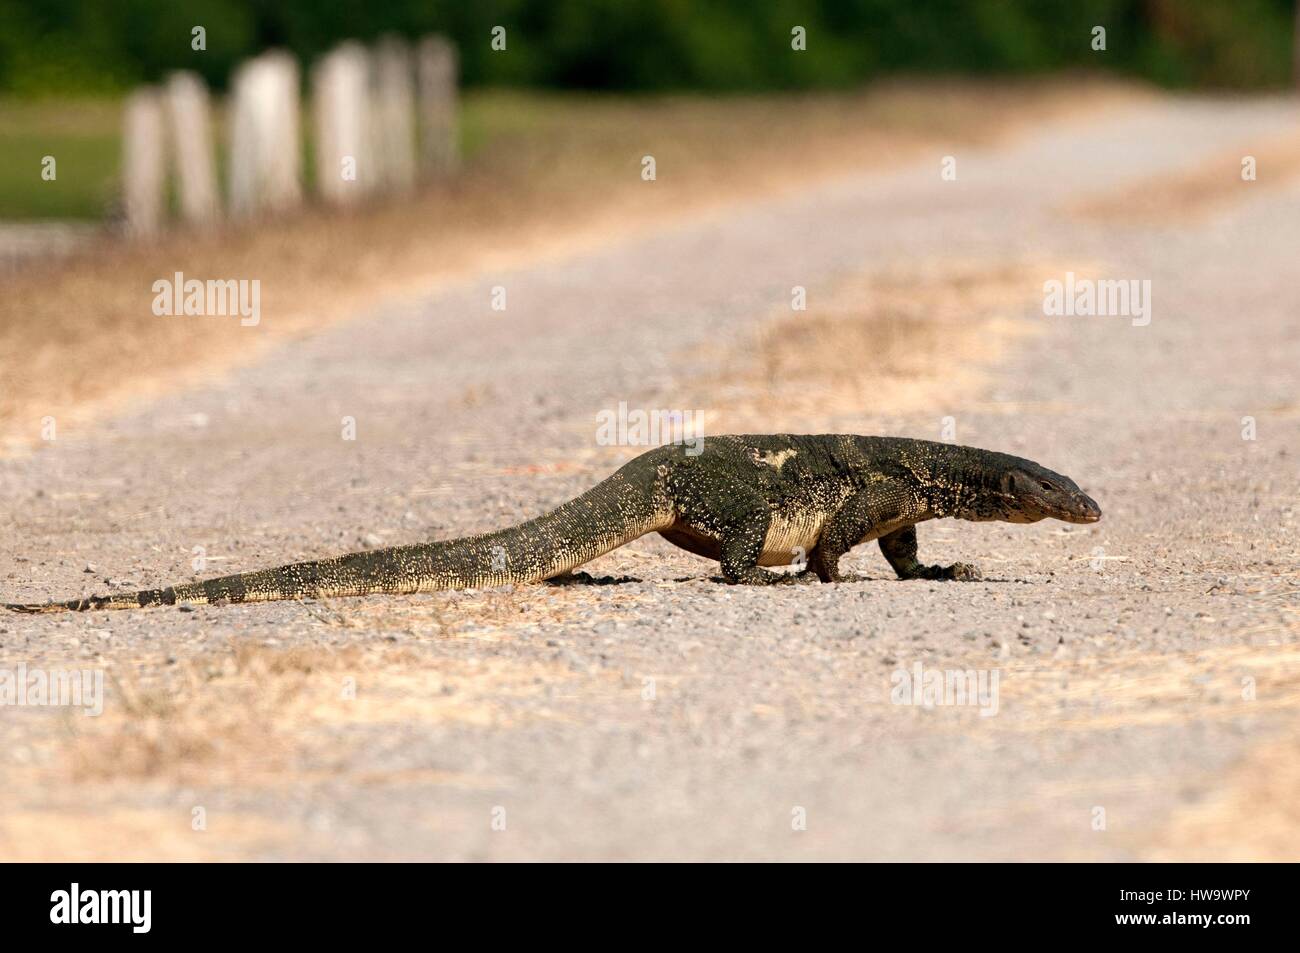 Thailand, Water monitor lizard (Varanus salvator) Stock Photo